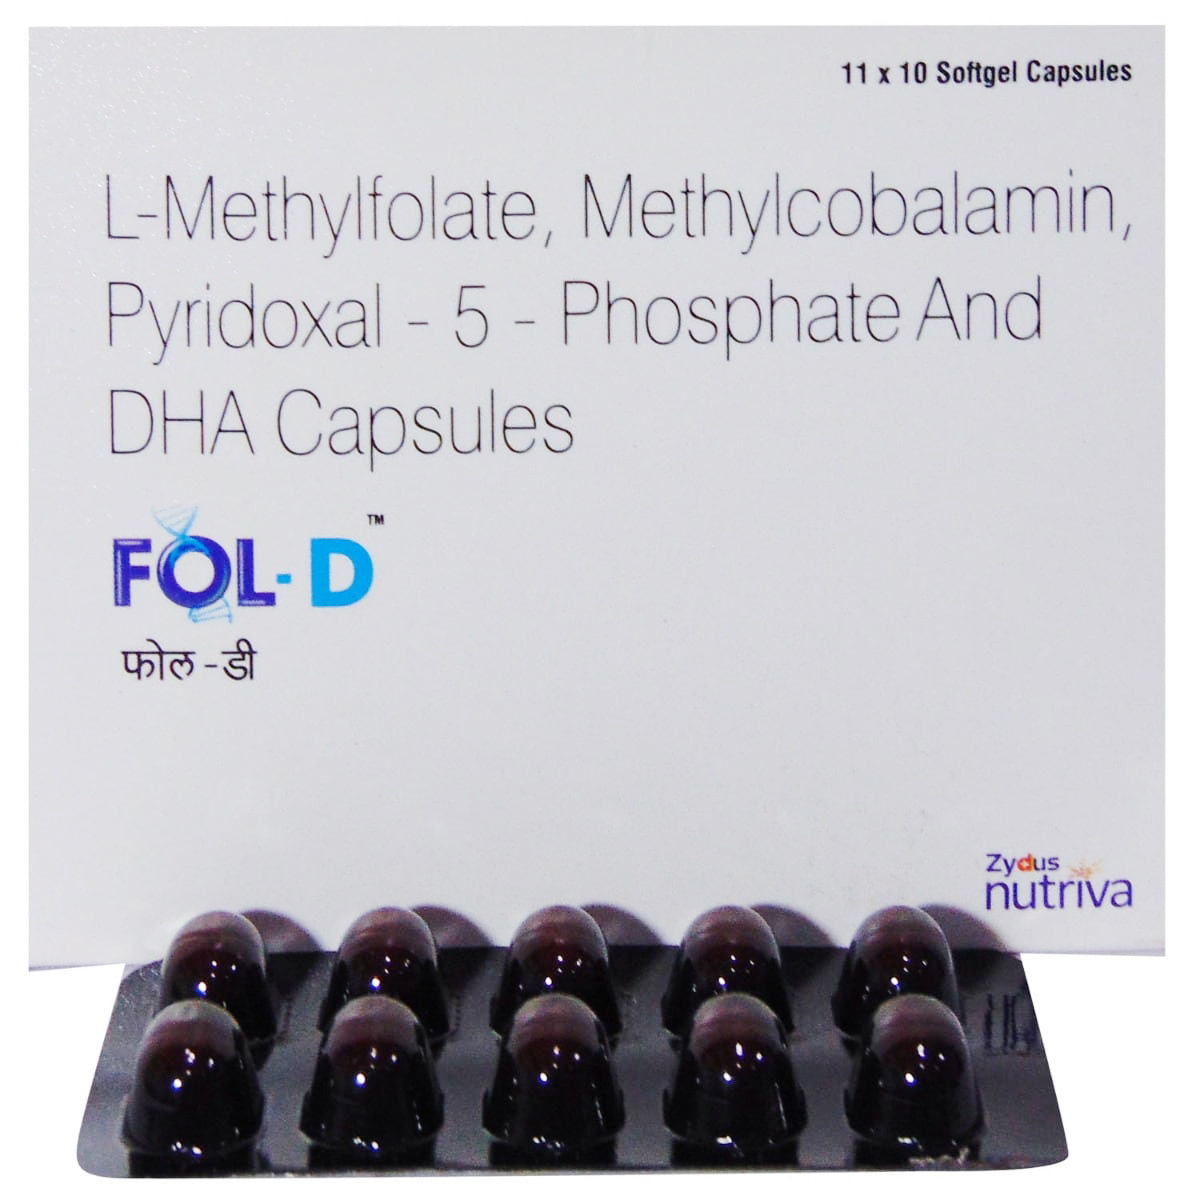 Fol-D Softgel Capsule 10's, Pack of 10 CapsuleS